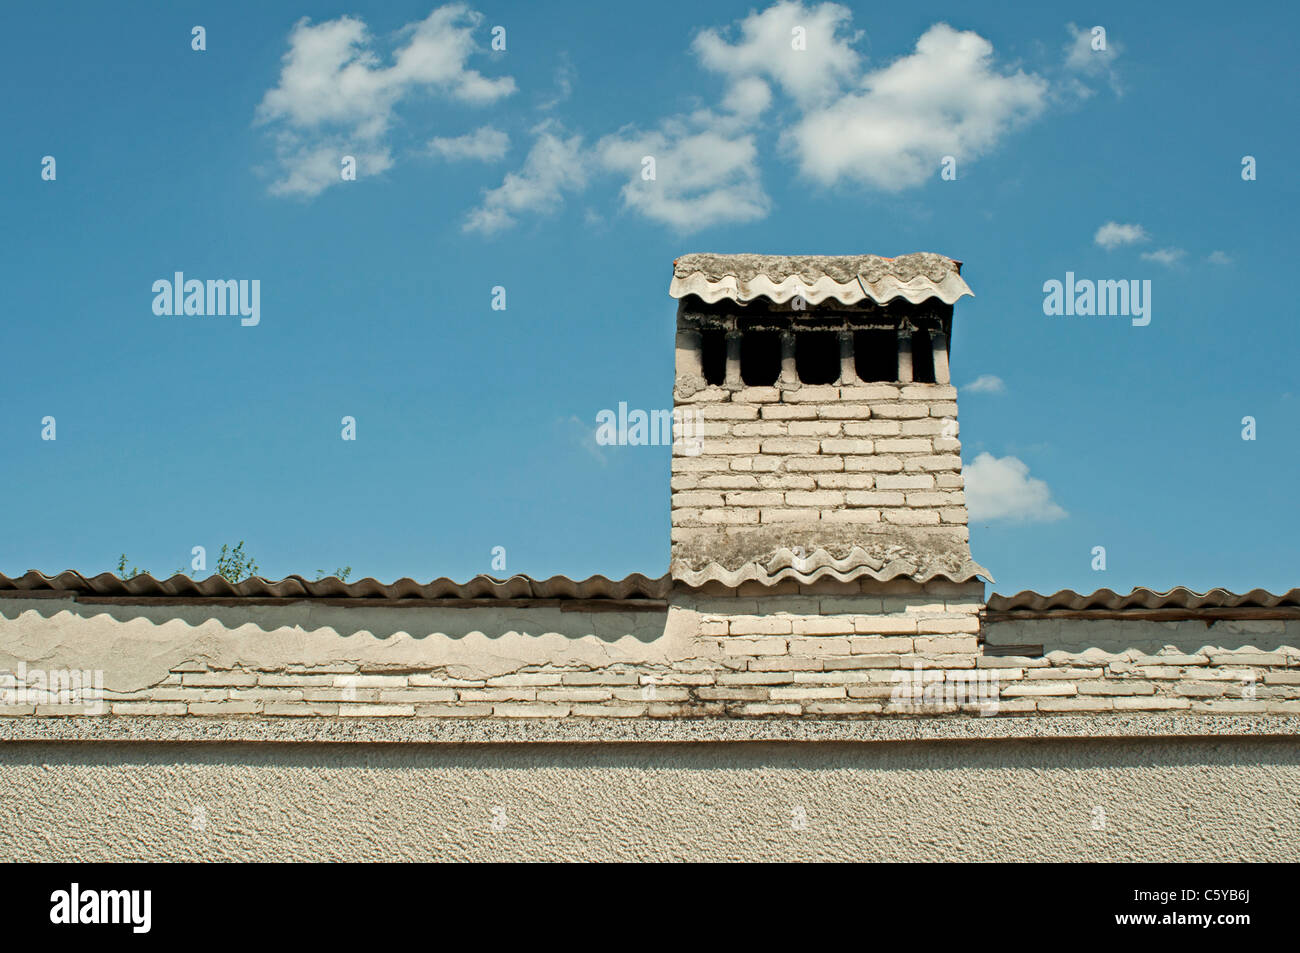 Weißes Dach mit Kamin. Horizontales Bild Stockfoto